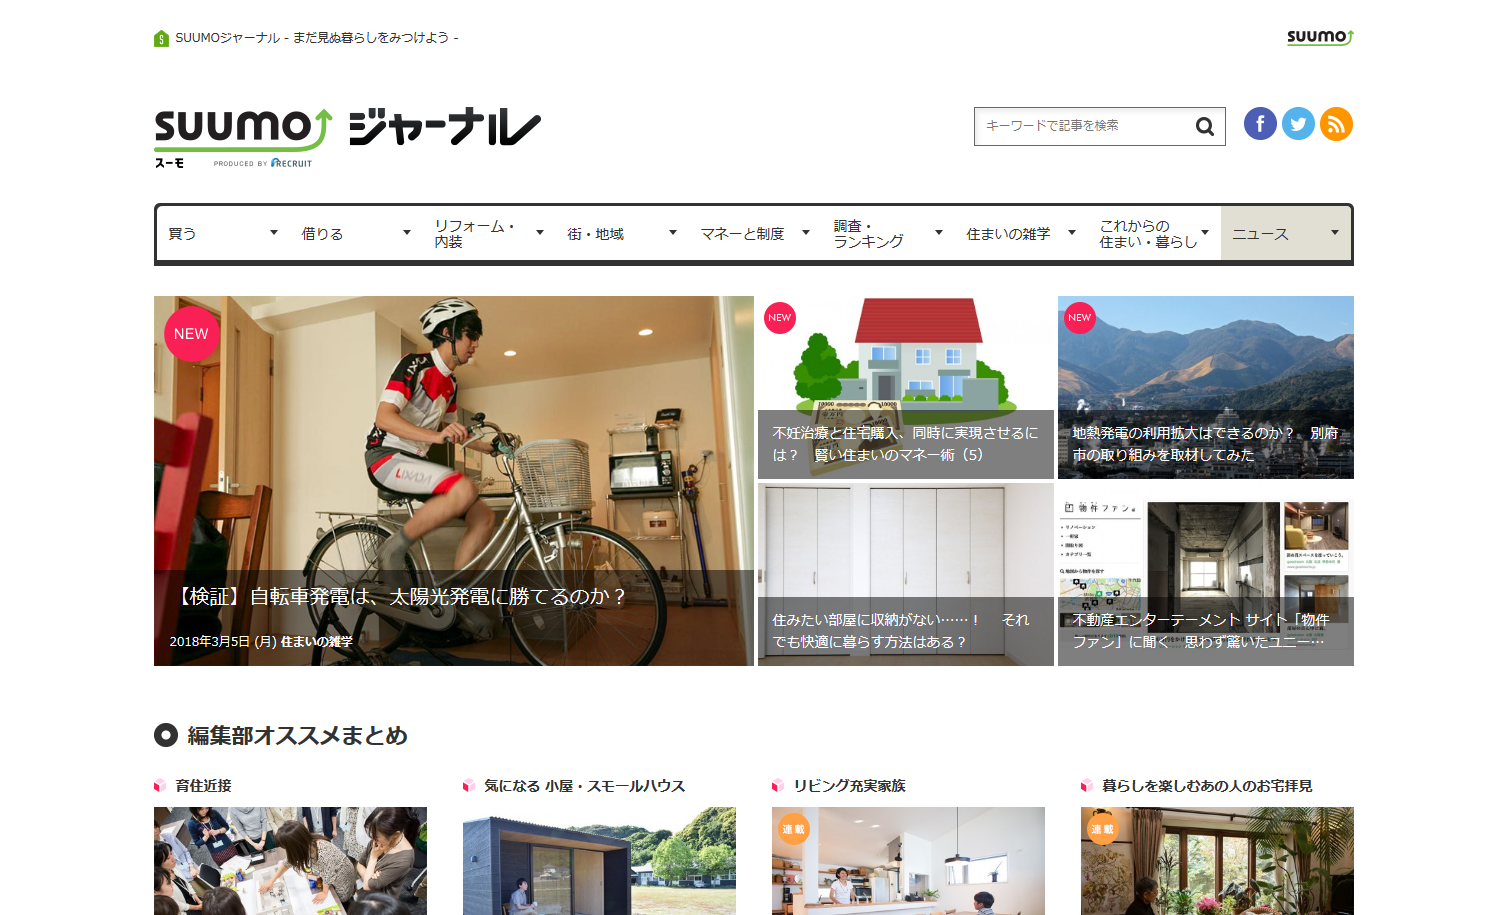 スーモジャーナル - 住まい・暮らしのニュース・コラムサイト I SUUMO - http___suumo.jp_journal_